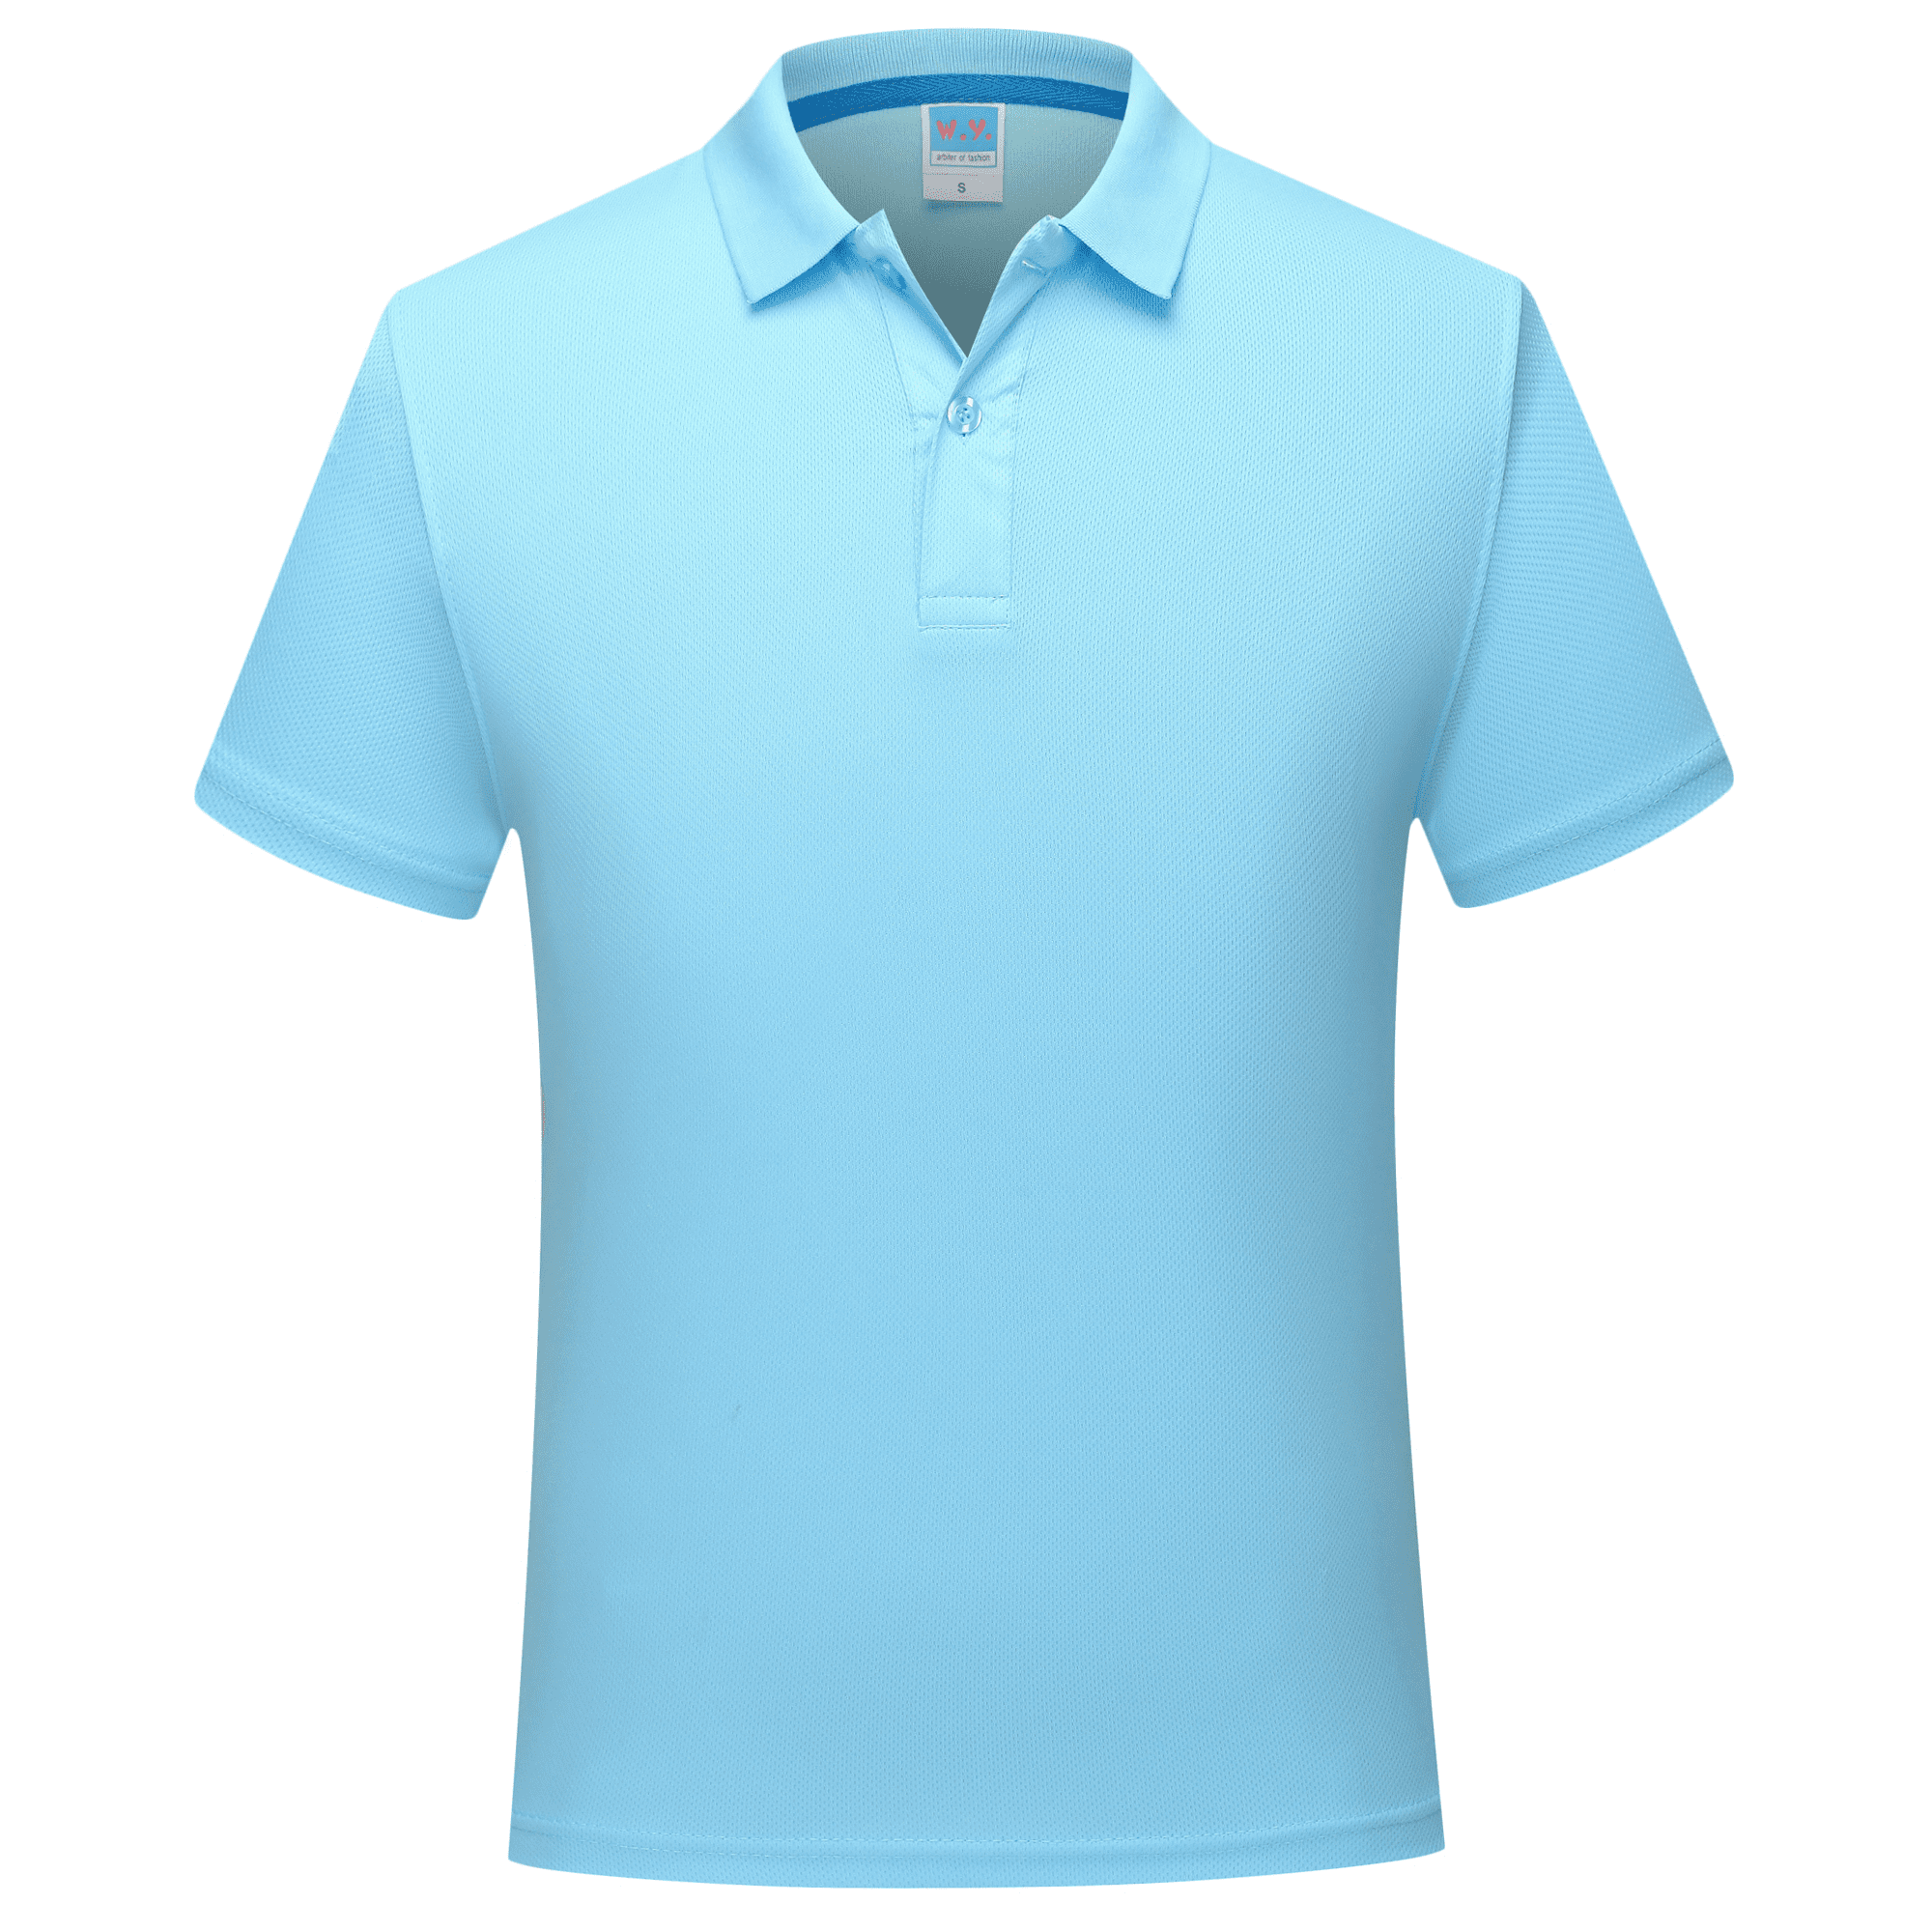 Repræsentere Frontier censur adidas Golf Men's Puremotion Climacool 3-Stripes Chest Polo Vivid Blue/Lead  Large - Walmart.com